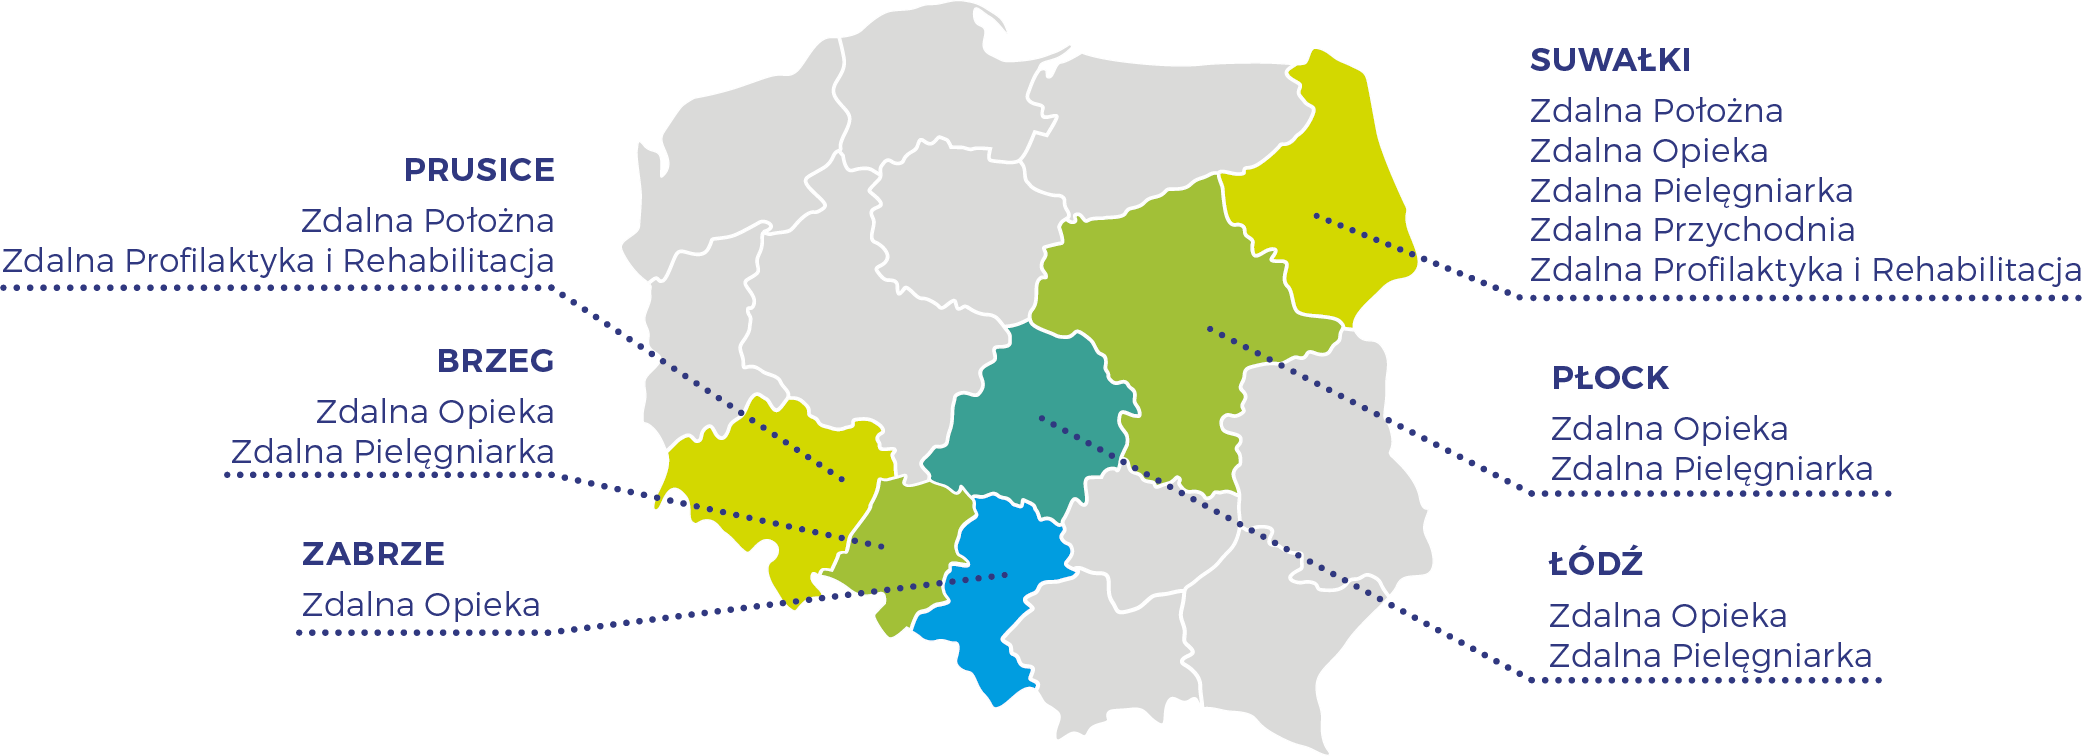 Miasto Zdrowia - platformy regionalne